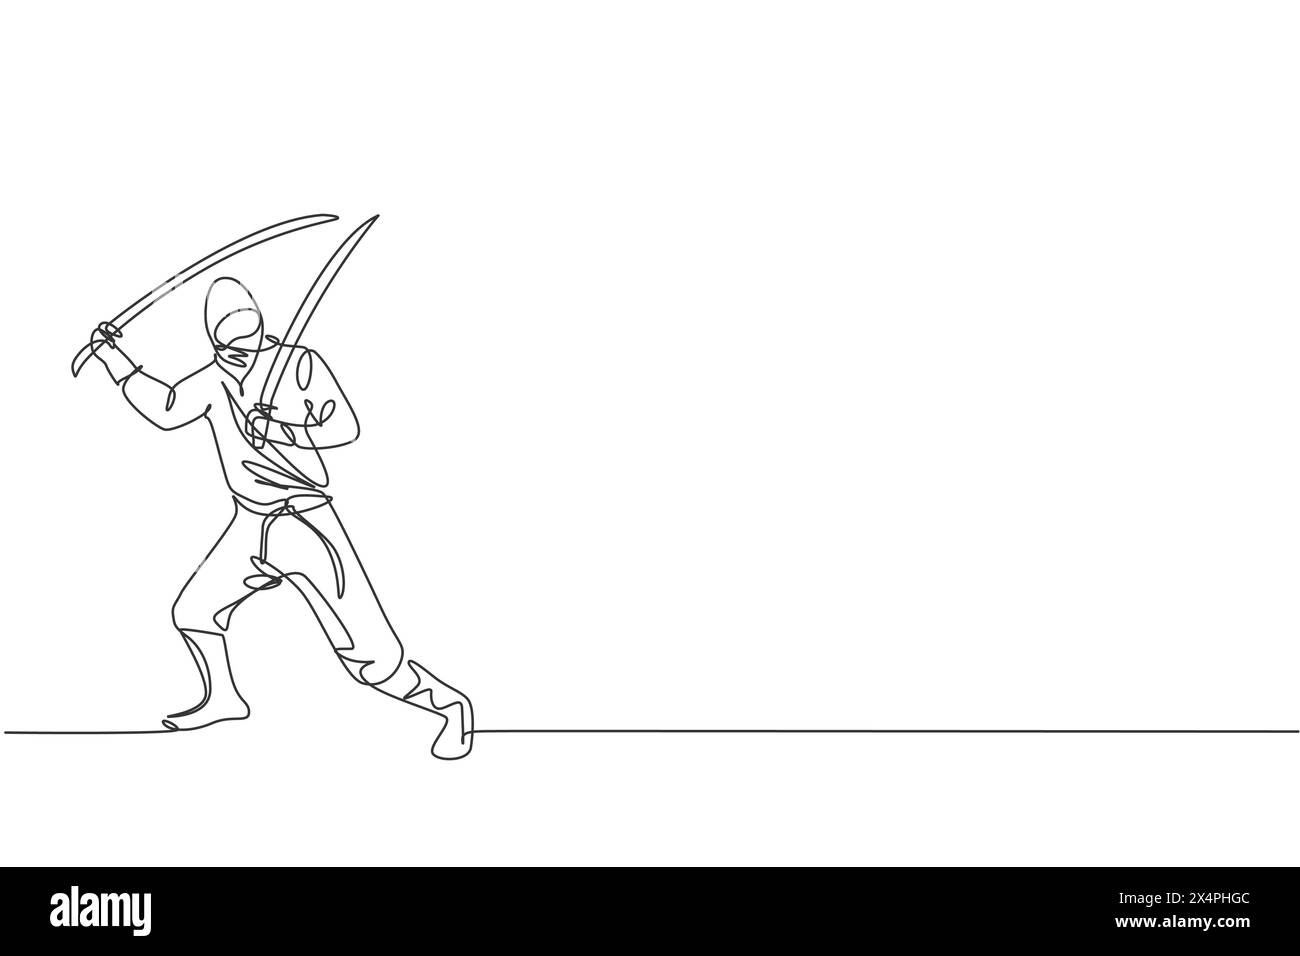 Un dessin d'une seule ligne représentant un jeune ninja traditionnel japonais énergique tenant des épées de samouraï sur une illustration vectorielle de pose d'attaque. Art martial combatif Illustration de Vecteur